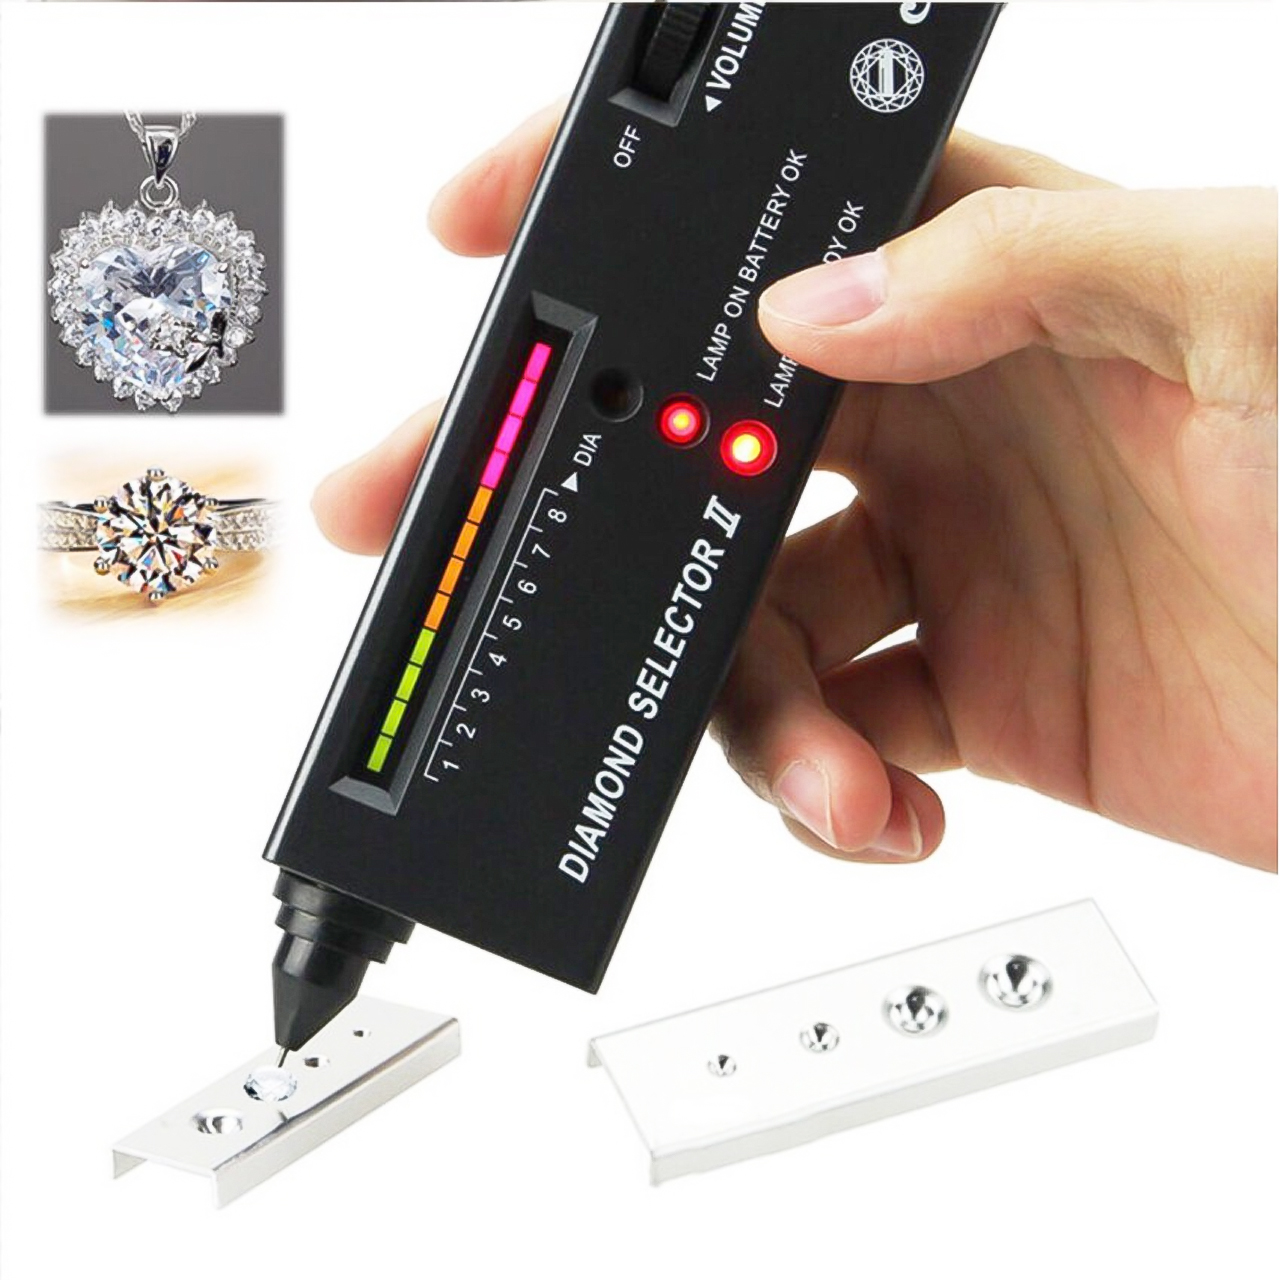 Bút thử kim cương máy Máy đo độ cứng của đá kiểm tra chất lượng trang sức tặng kèm pin chuyên dụng - hàng chính hãng Vinetteam